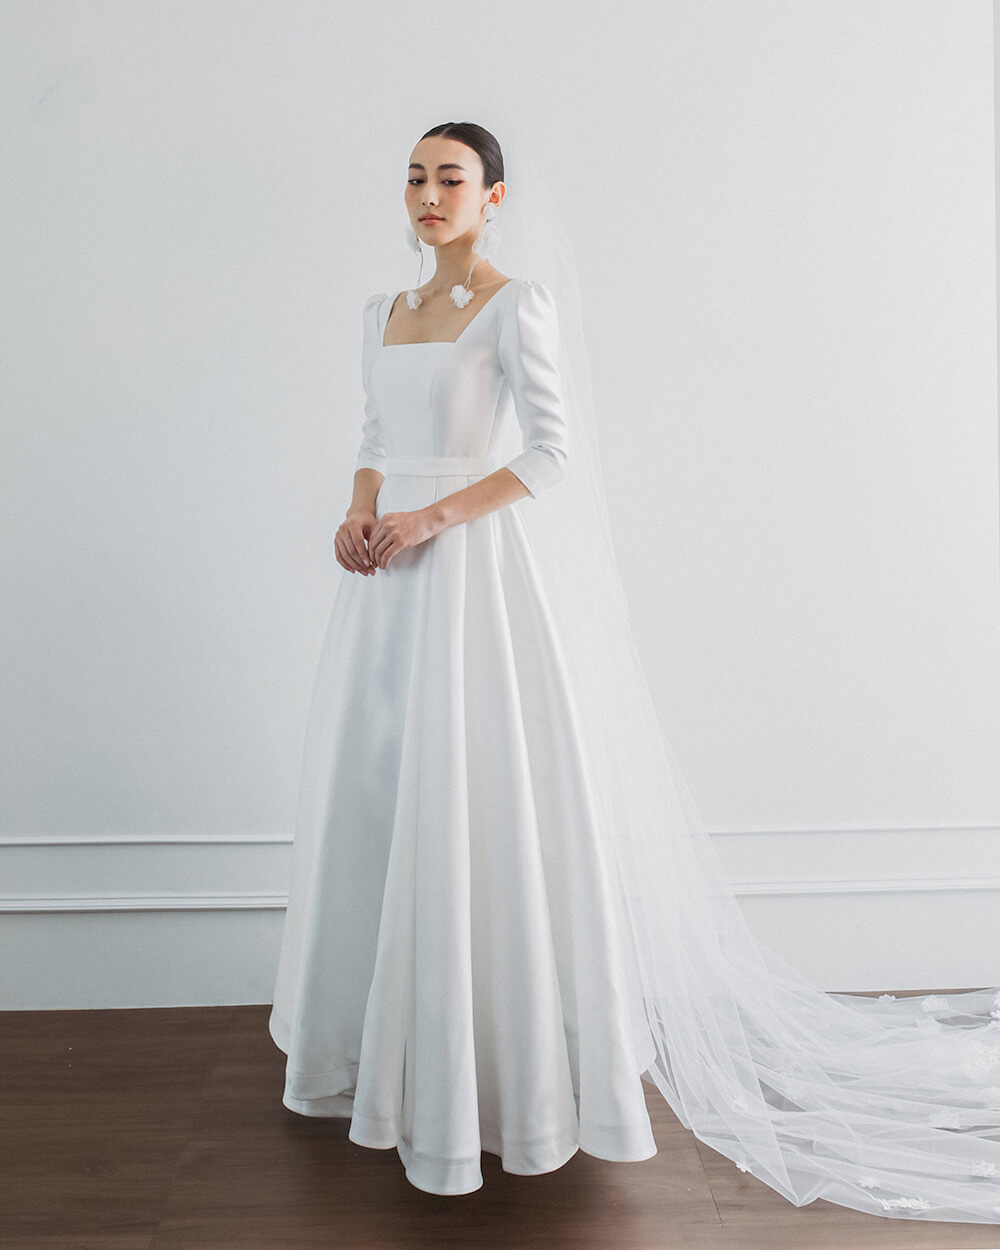 10 mẫu váy cưới tối giản nhưng tinh tế cho mùa cưới 2019